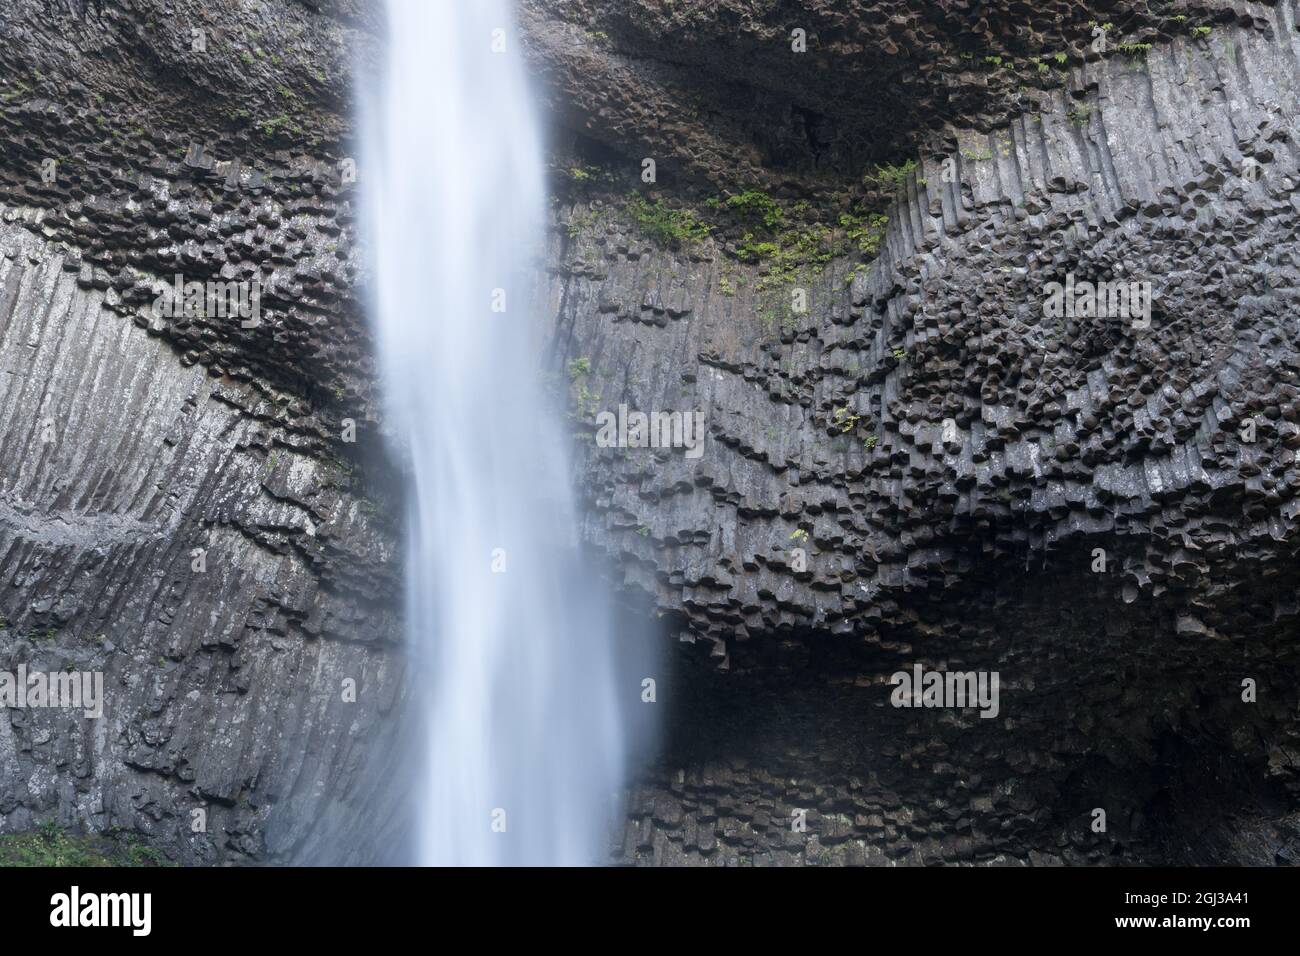 Colonnade dans le débit de basalte de la Grande ronde -- du Columbia River Basalt Group (CRBG), Latourell Falls, Oregon Banque D'Images